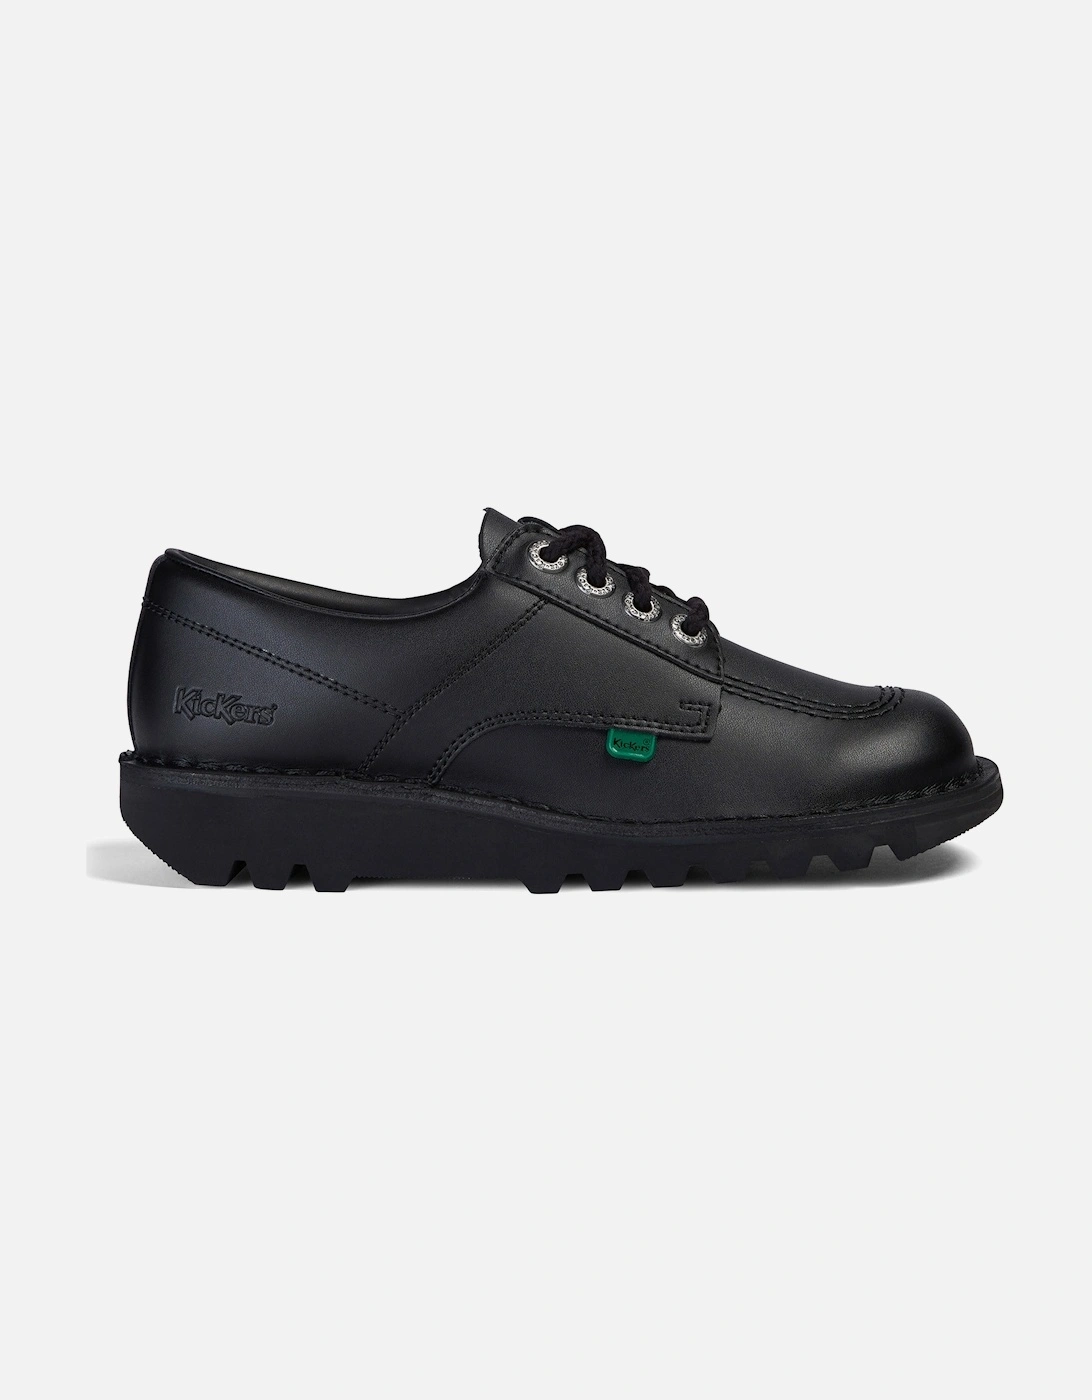 Mens Kick Lo Classic Shoes (Black), 8 of 7